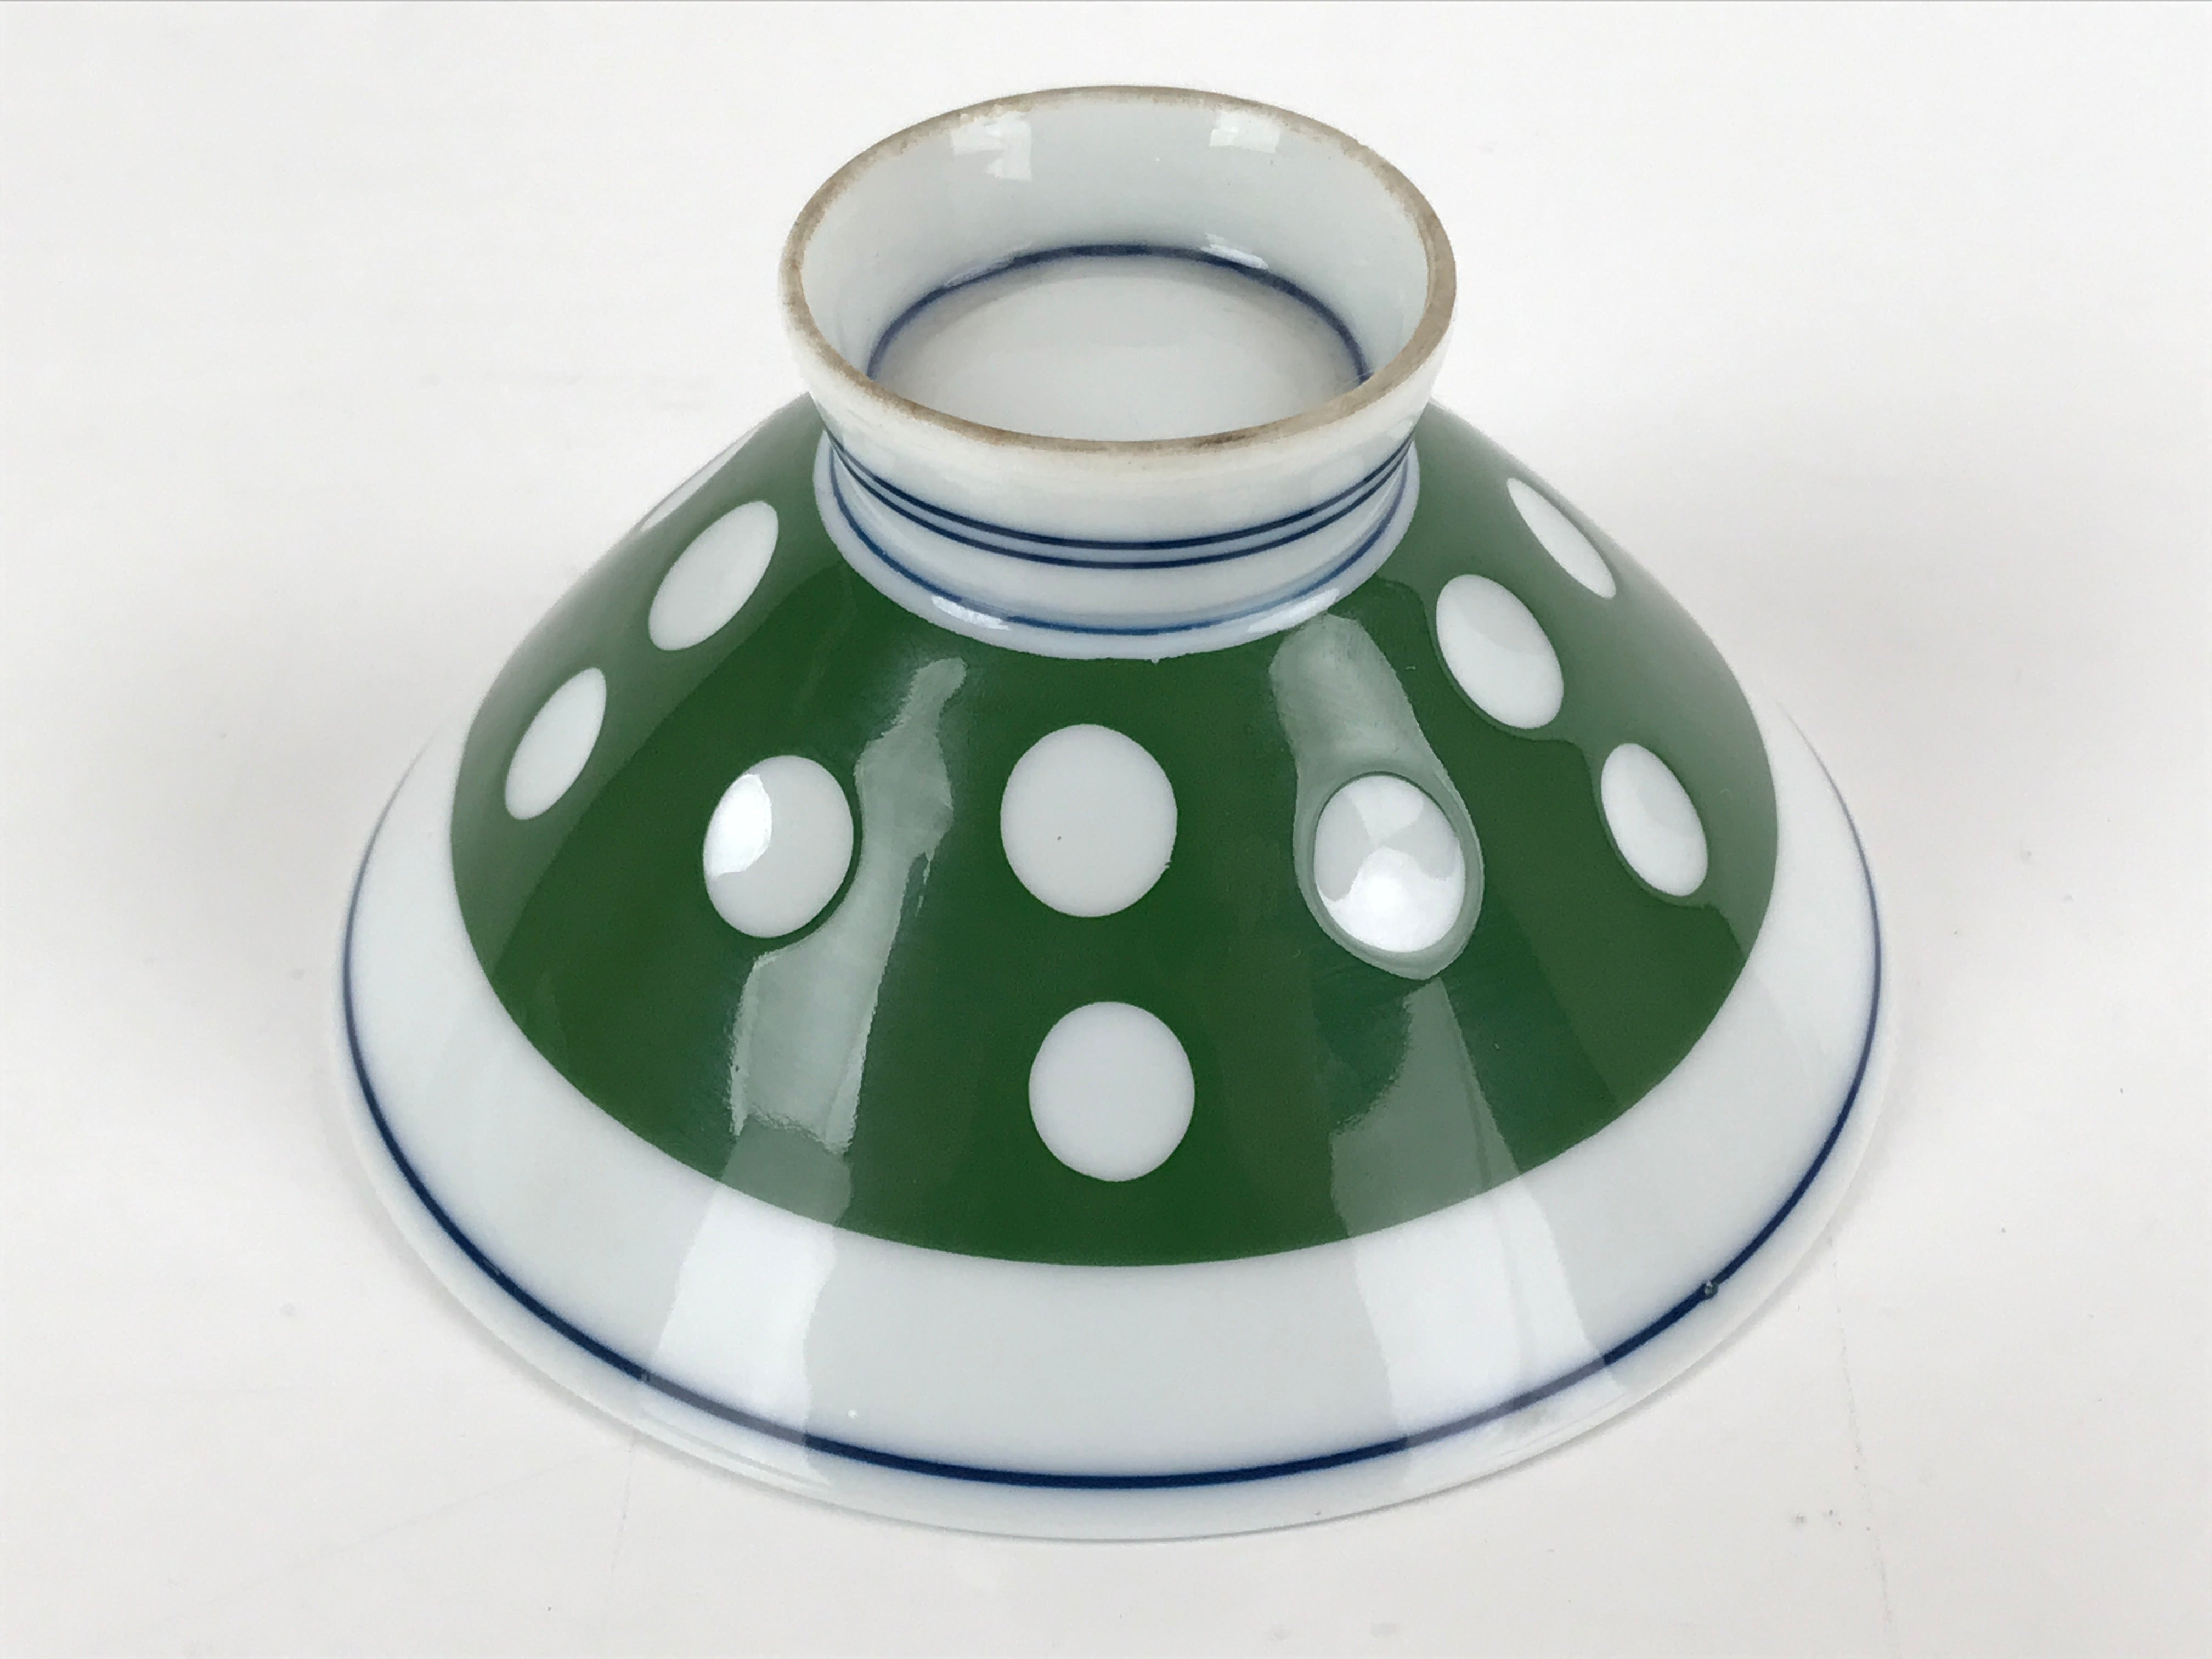 Japanese Porcelain Rice Bowl Vtg Wide Green Polka Dot Design White Blue PY729